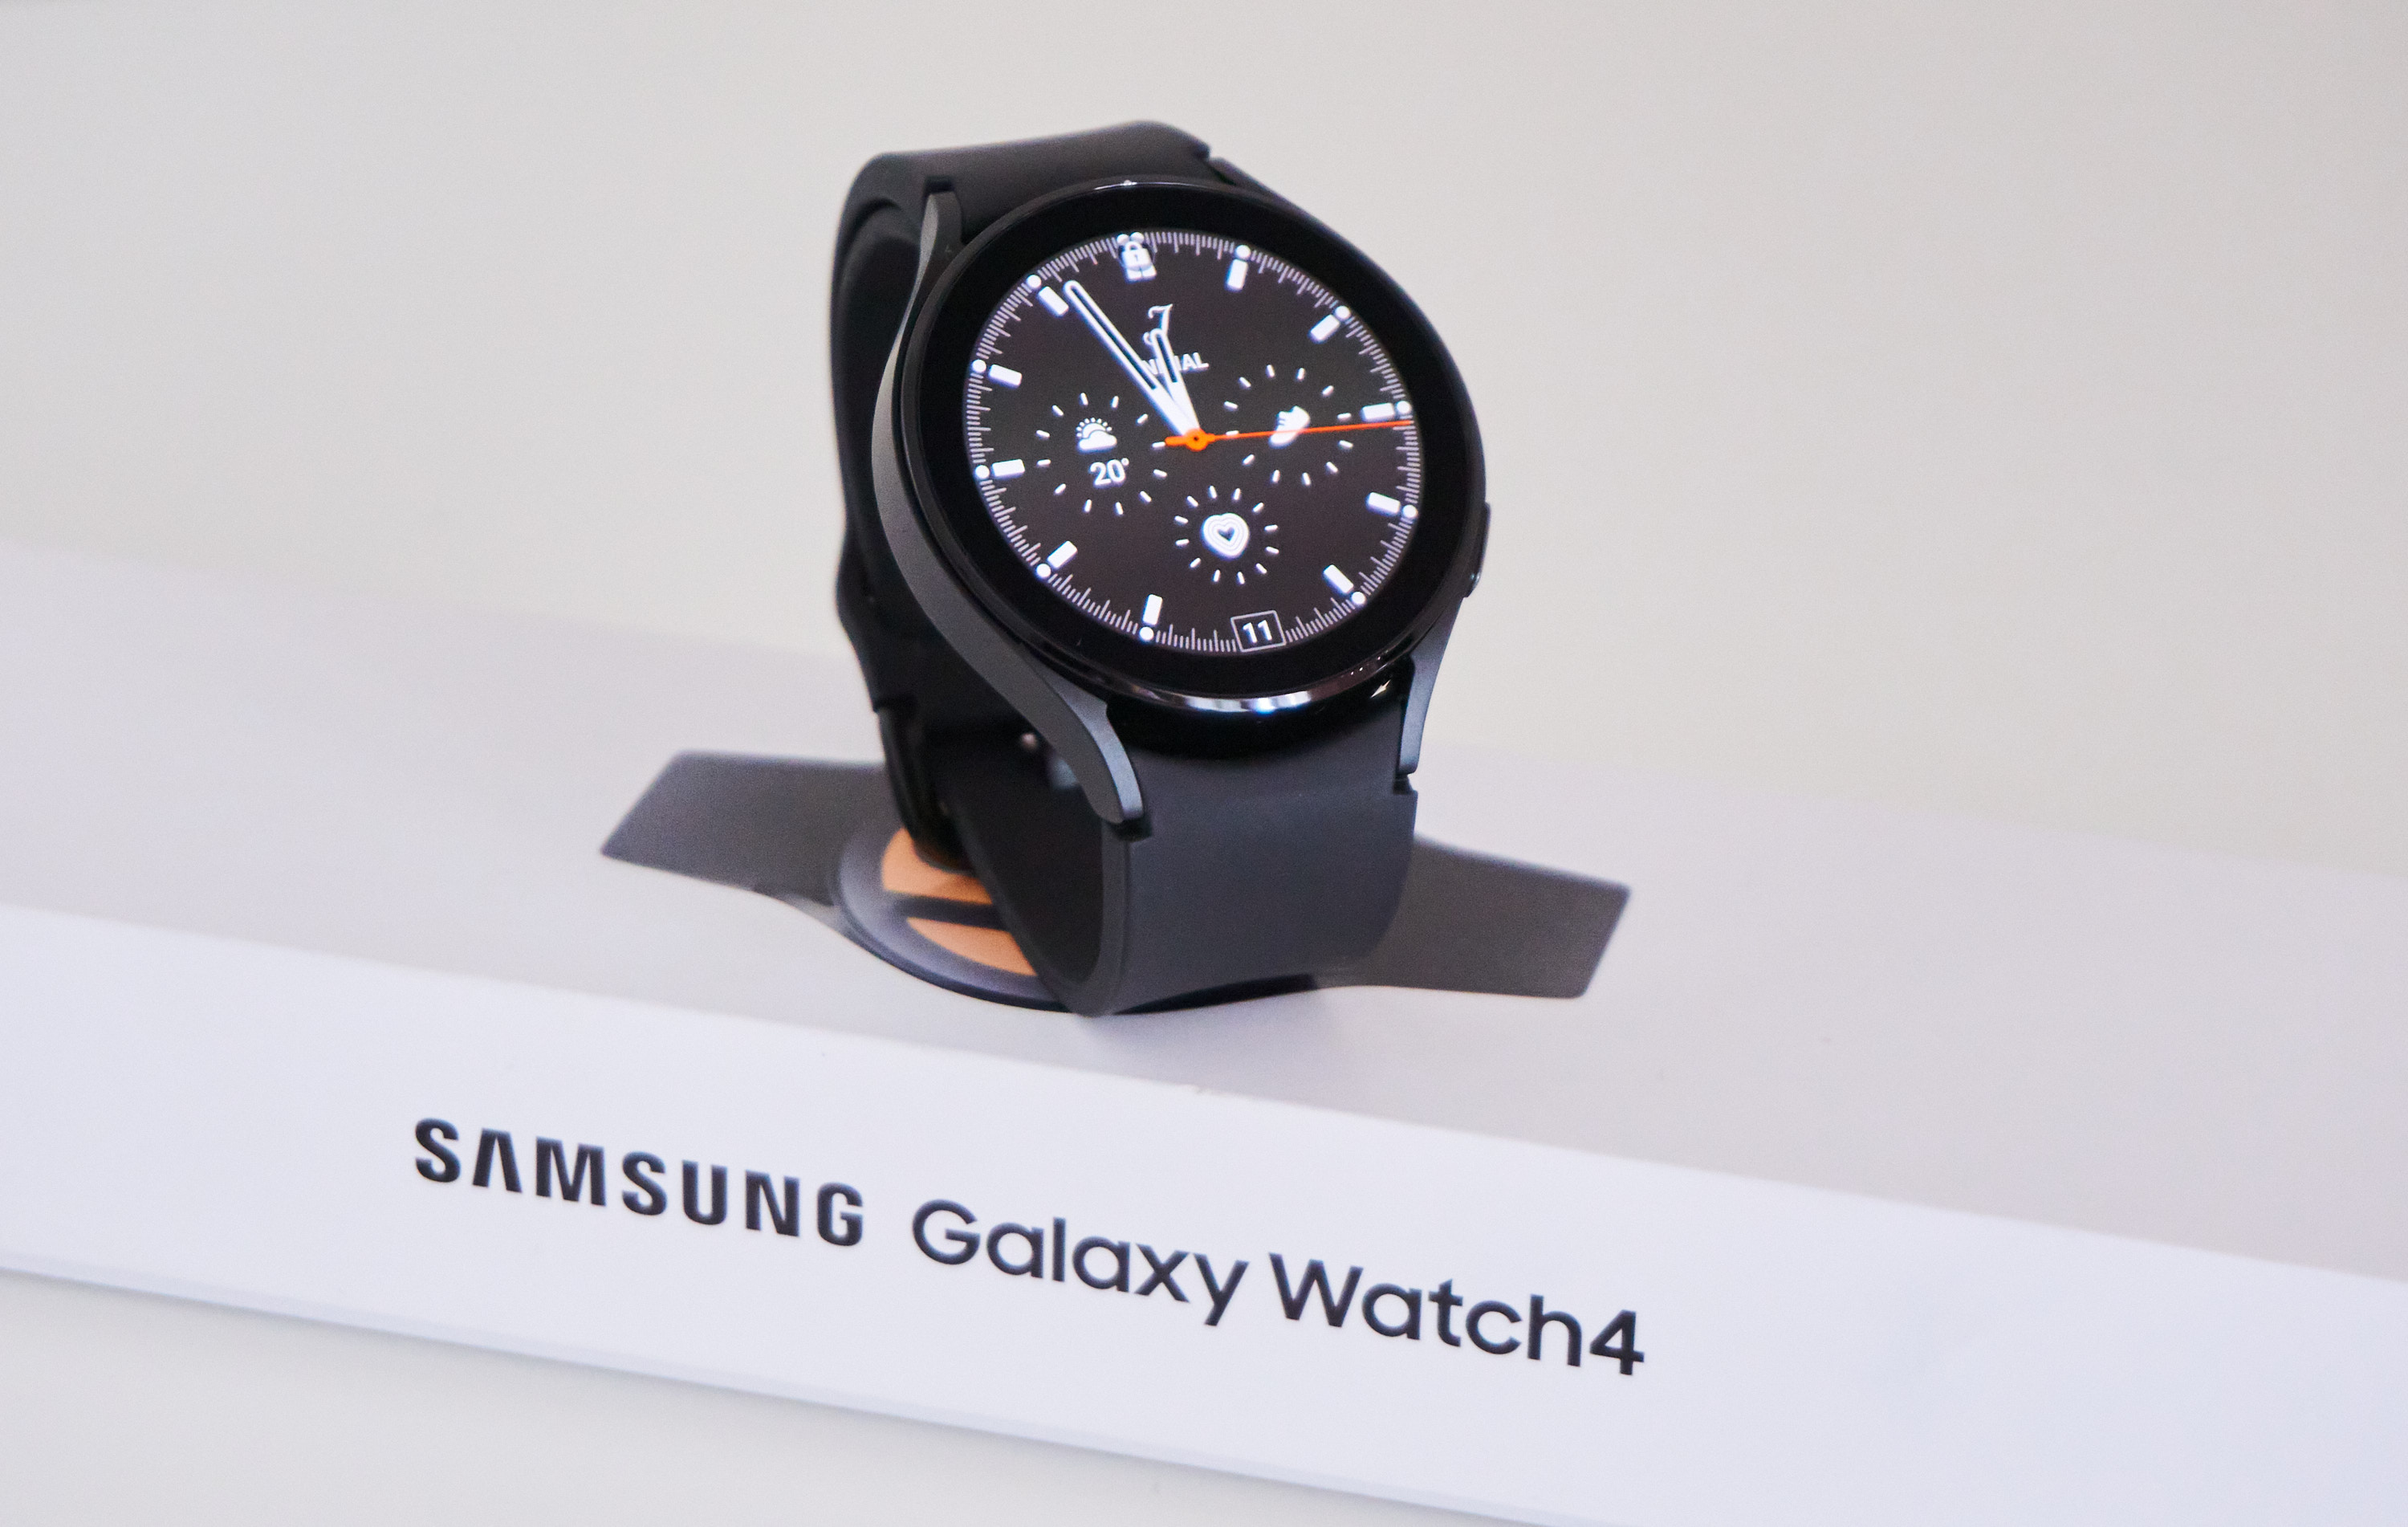 Samsung Galaxy Watch 4 wear os 3 asystent google